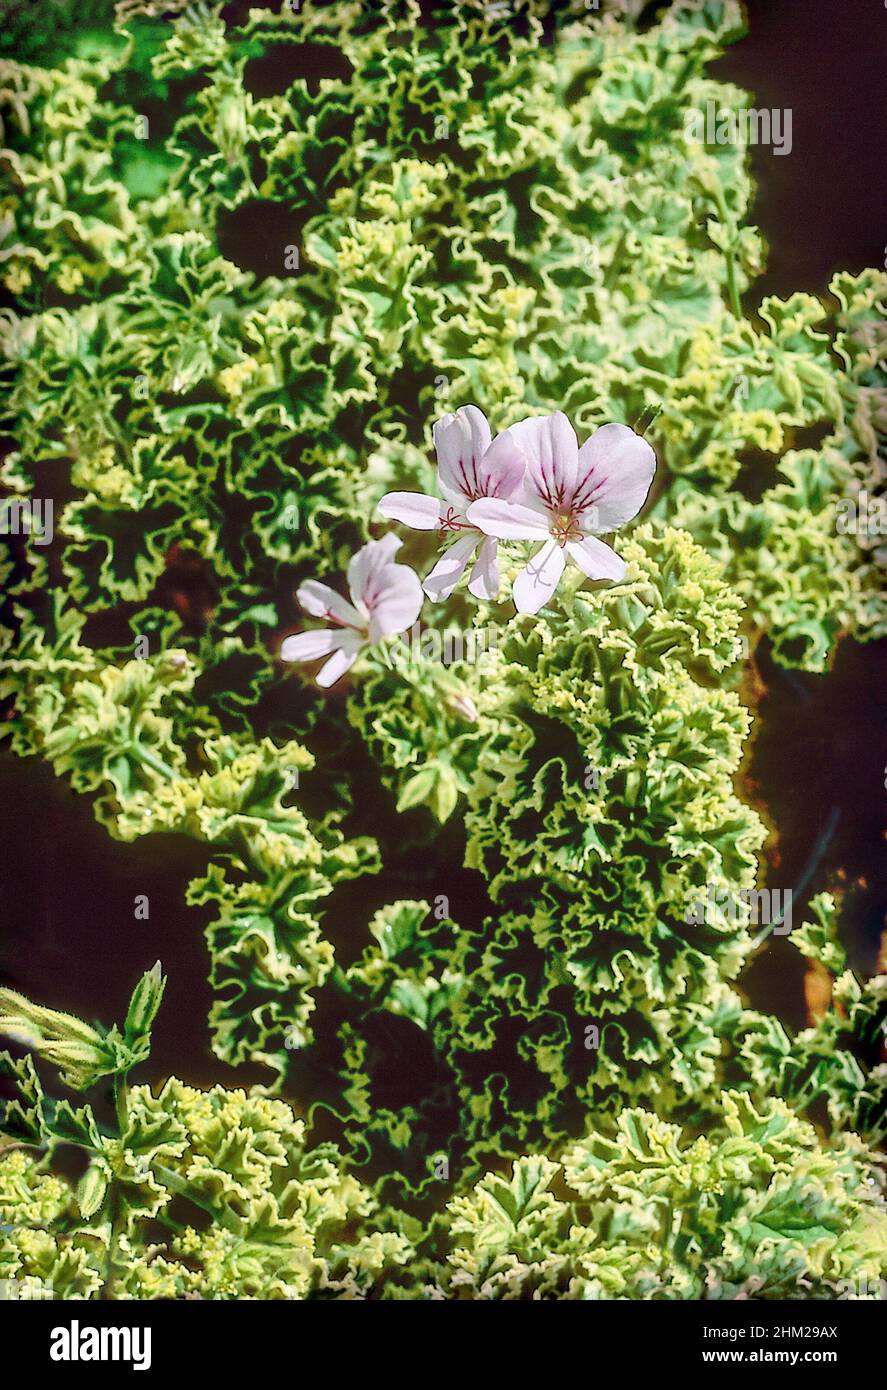 Pelargonium crispum variegatum con limón verde perfumado y crema de hojas variegadas y rosa pálido malva flores una helada tierna planta de la casa Foto de stock